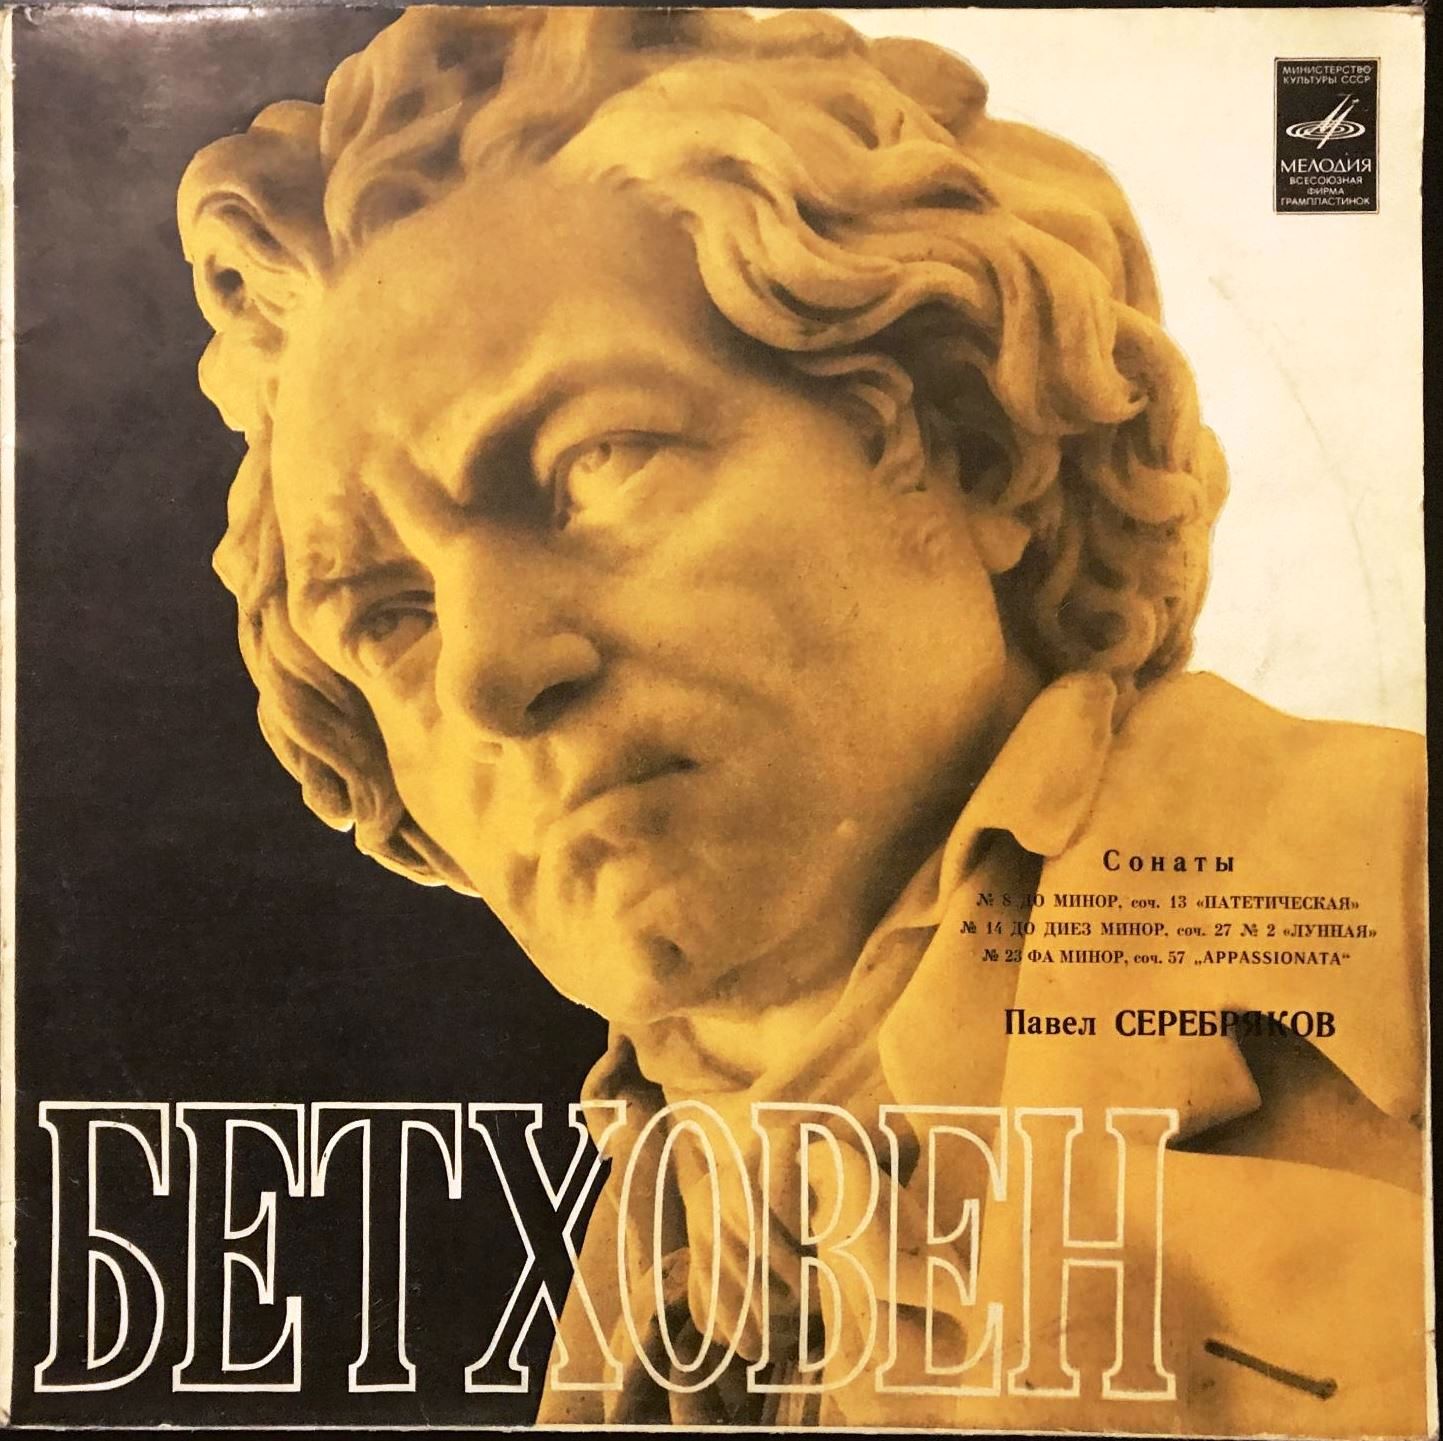 Л. Бетховен: Сонаты для ф-но №№ 8, 14, 23 (Павел Серебряков)